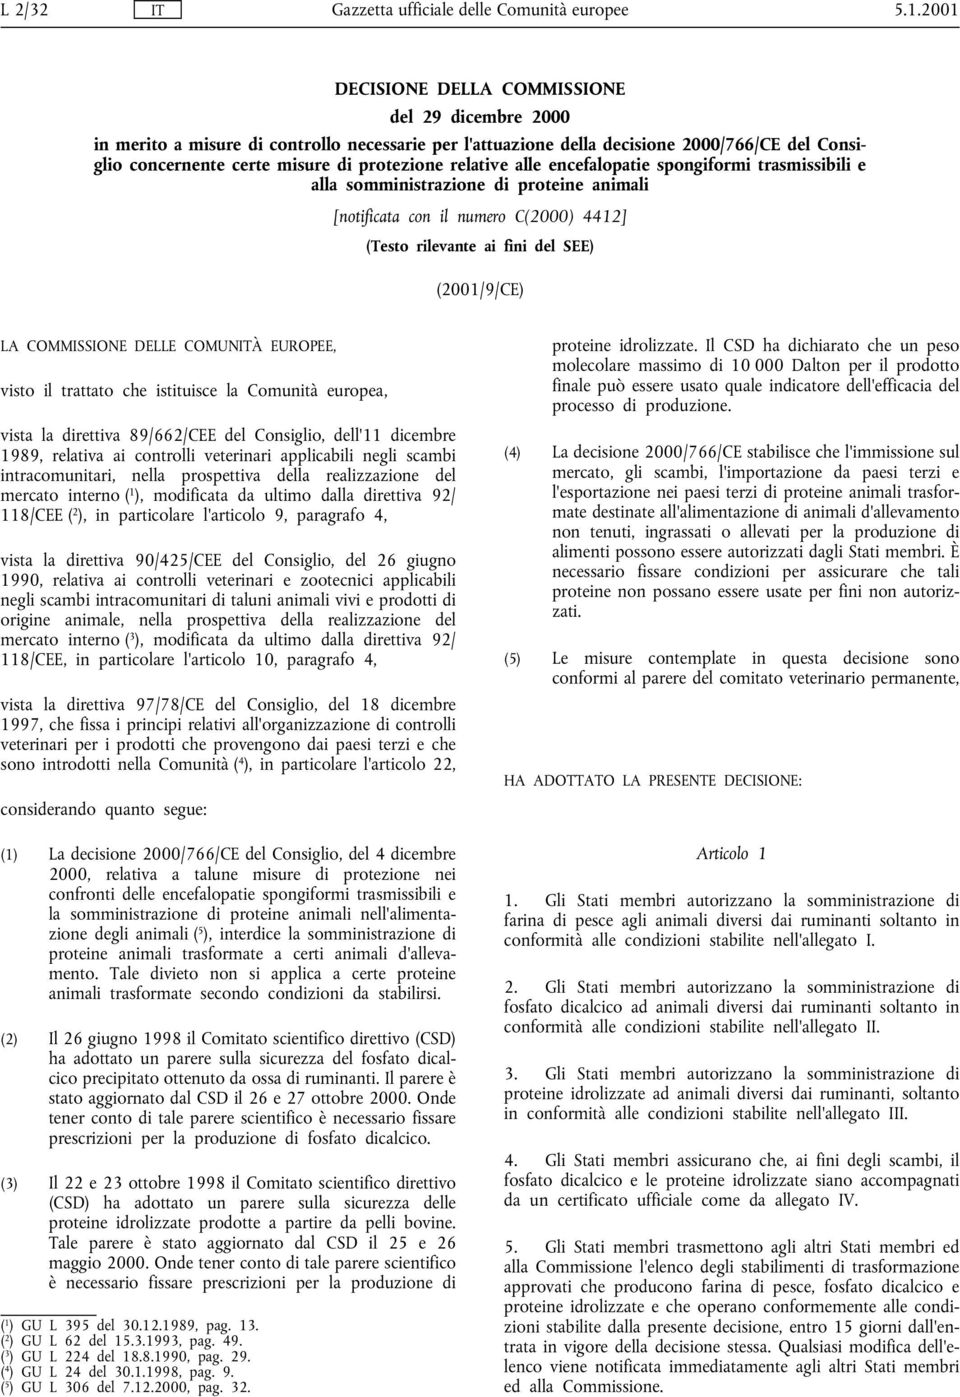 DELLE COMUNITÀ EUROPEE, visto il trattato che istituisce la Comunità europea, vista la direttiva 89/662/CEE del Consiglio, dell'11 dicembre 1989, relativa ai controlli veterinari applicabili negli